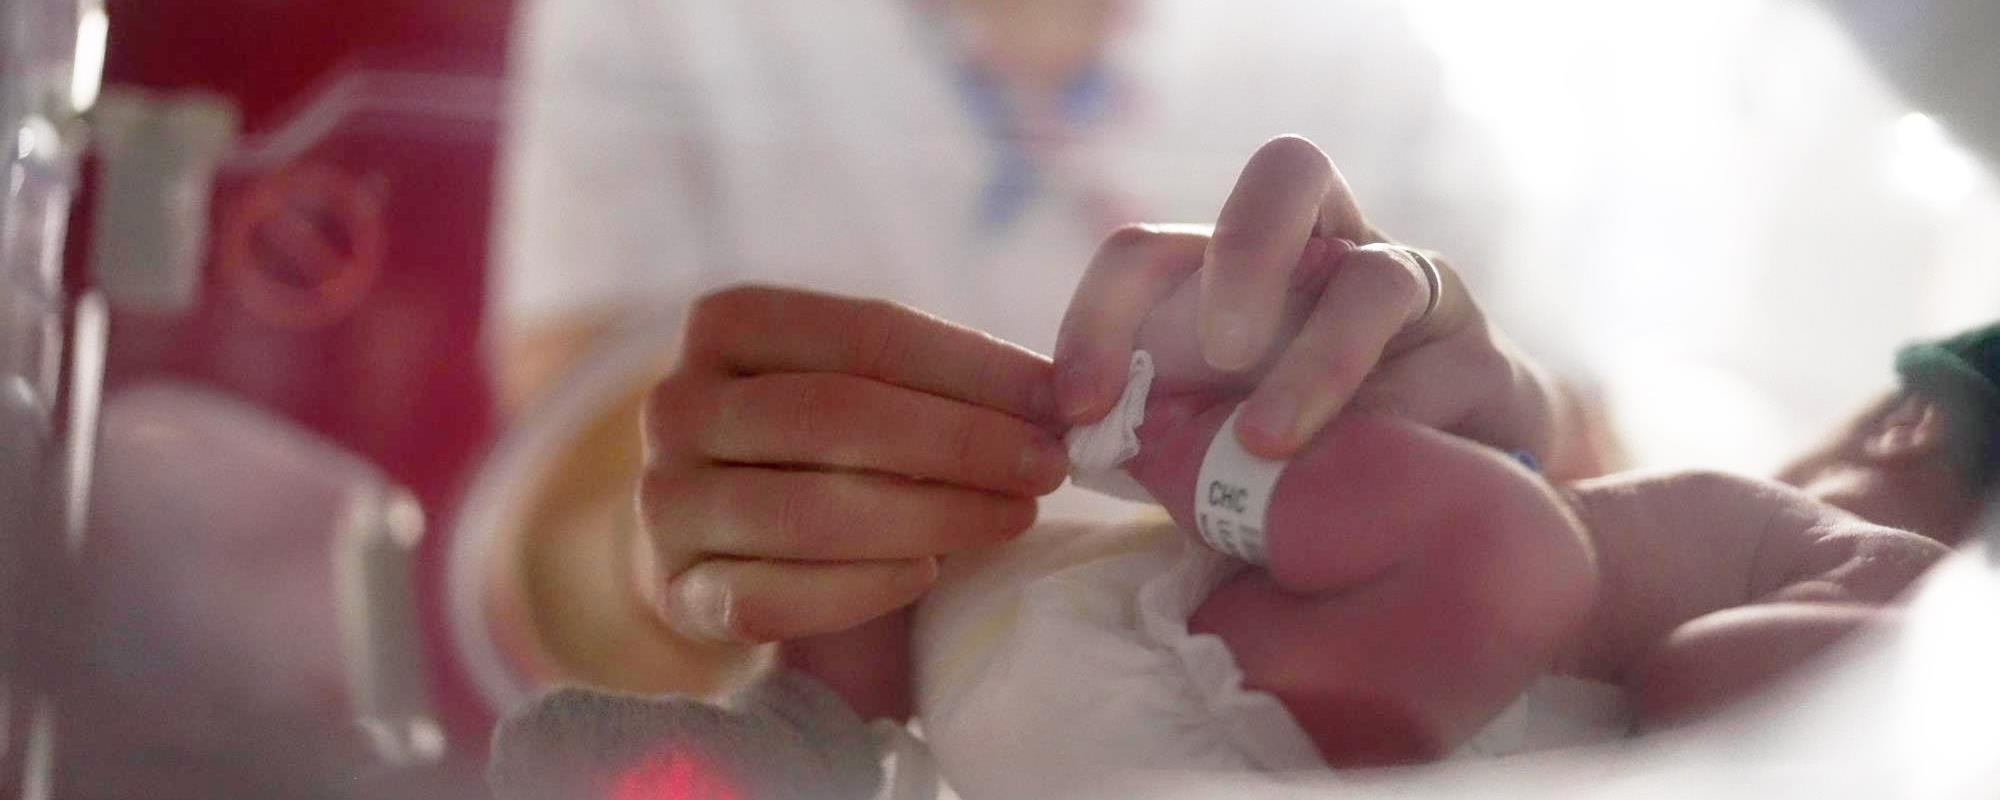 22/03/2022 – Neonatologie: Wo Babys gerne verwöhnt werden